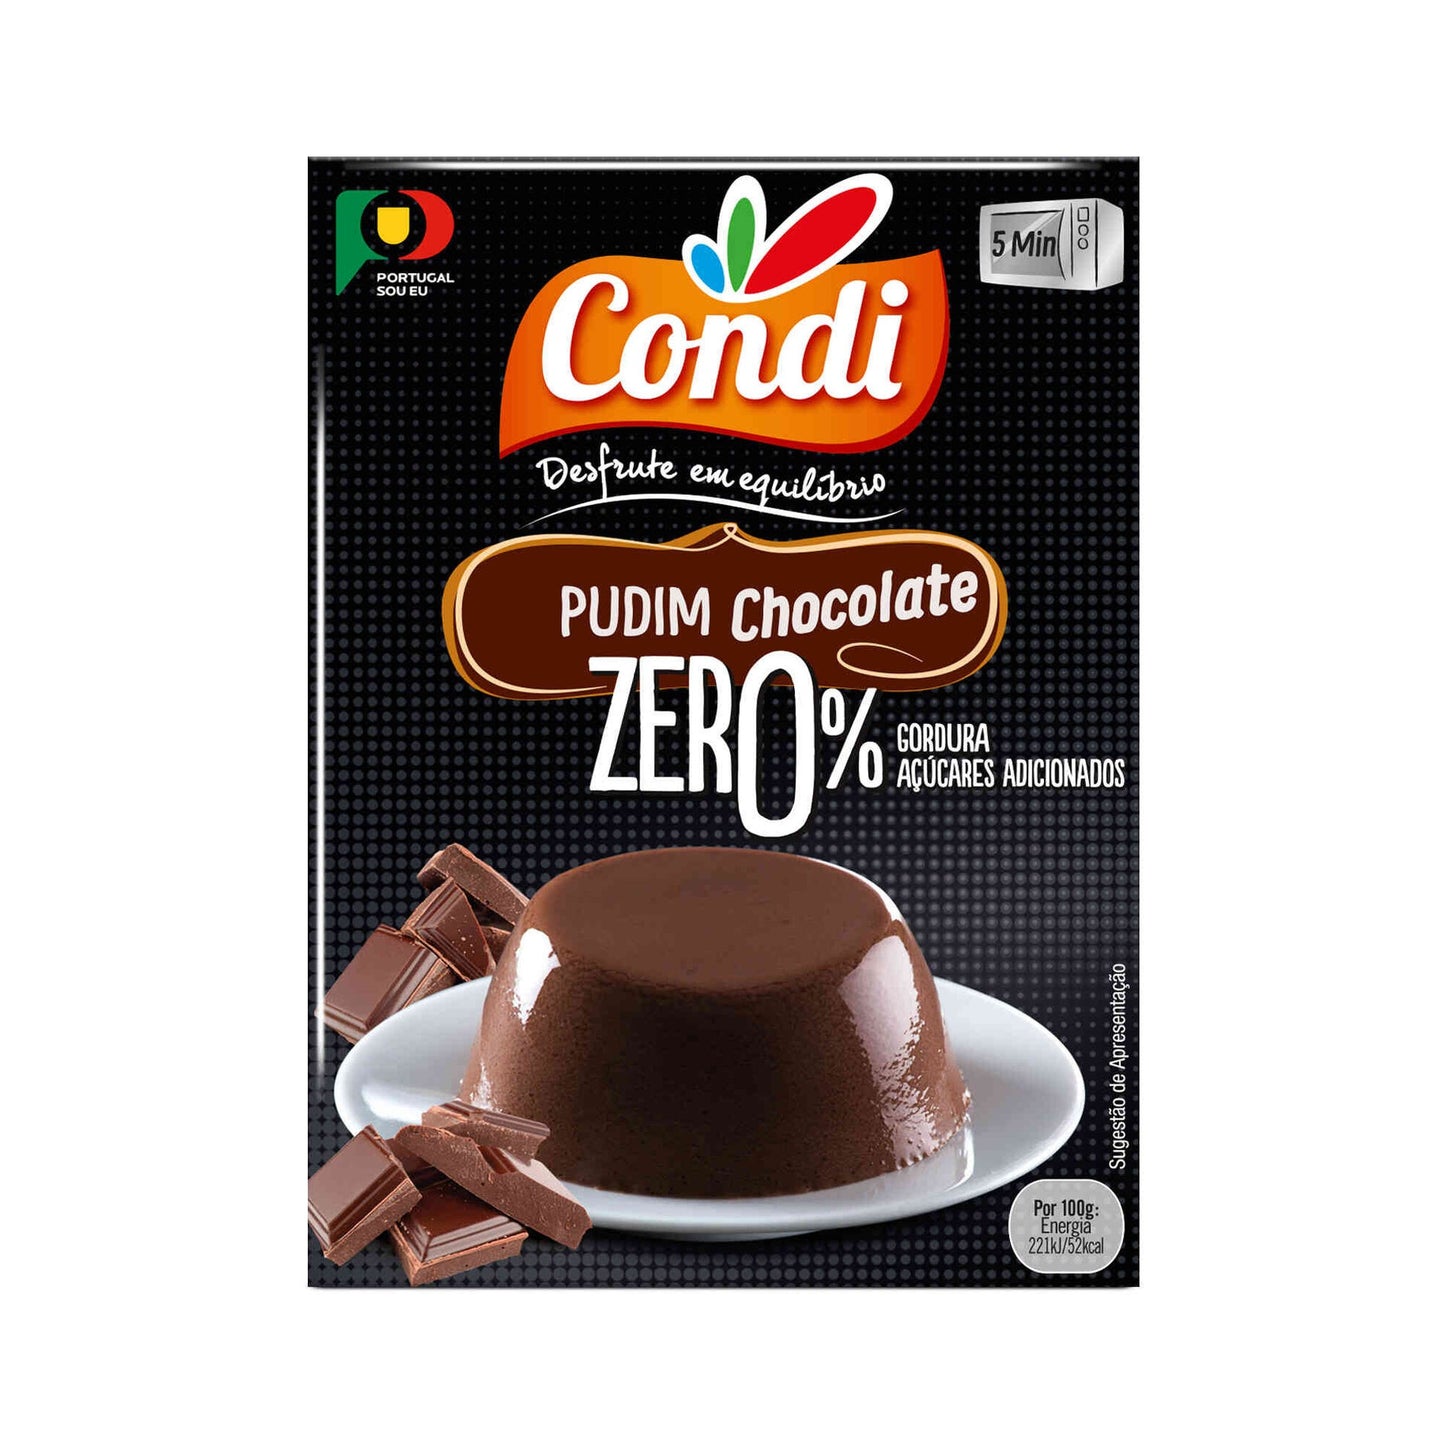 Pudim de Chocolate Zero% Condição emb. 27 gramas